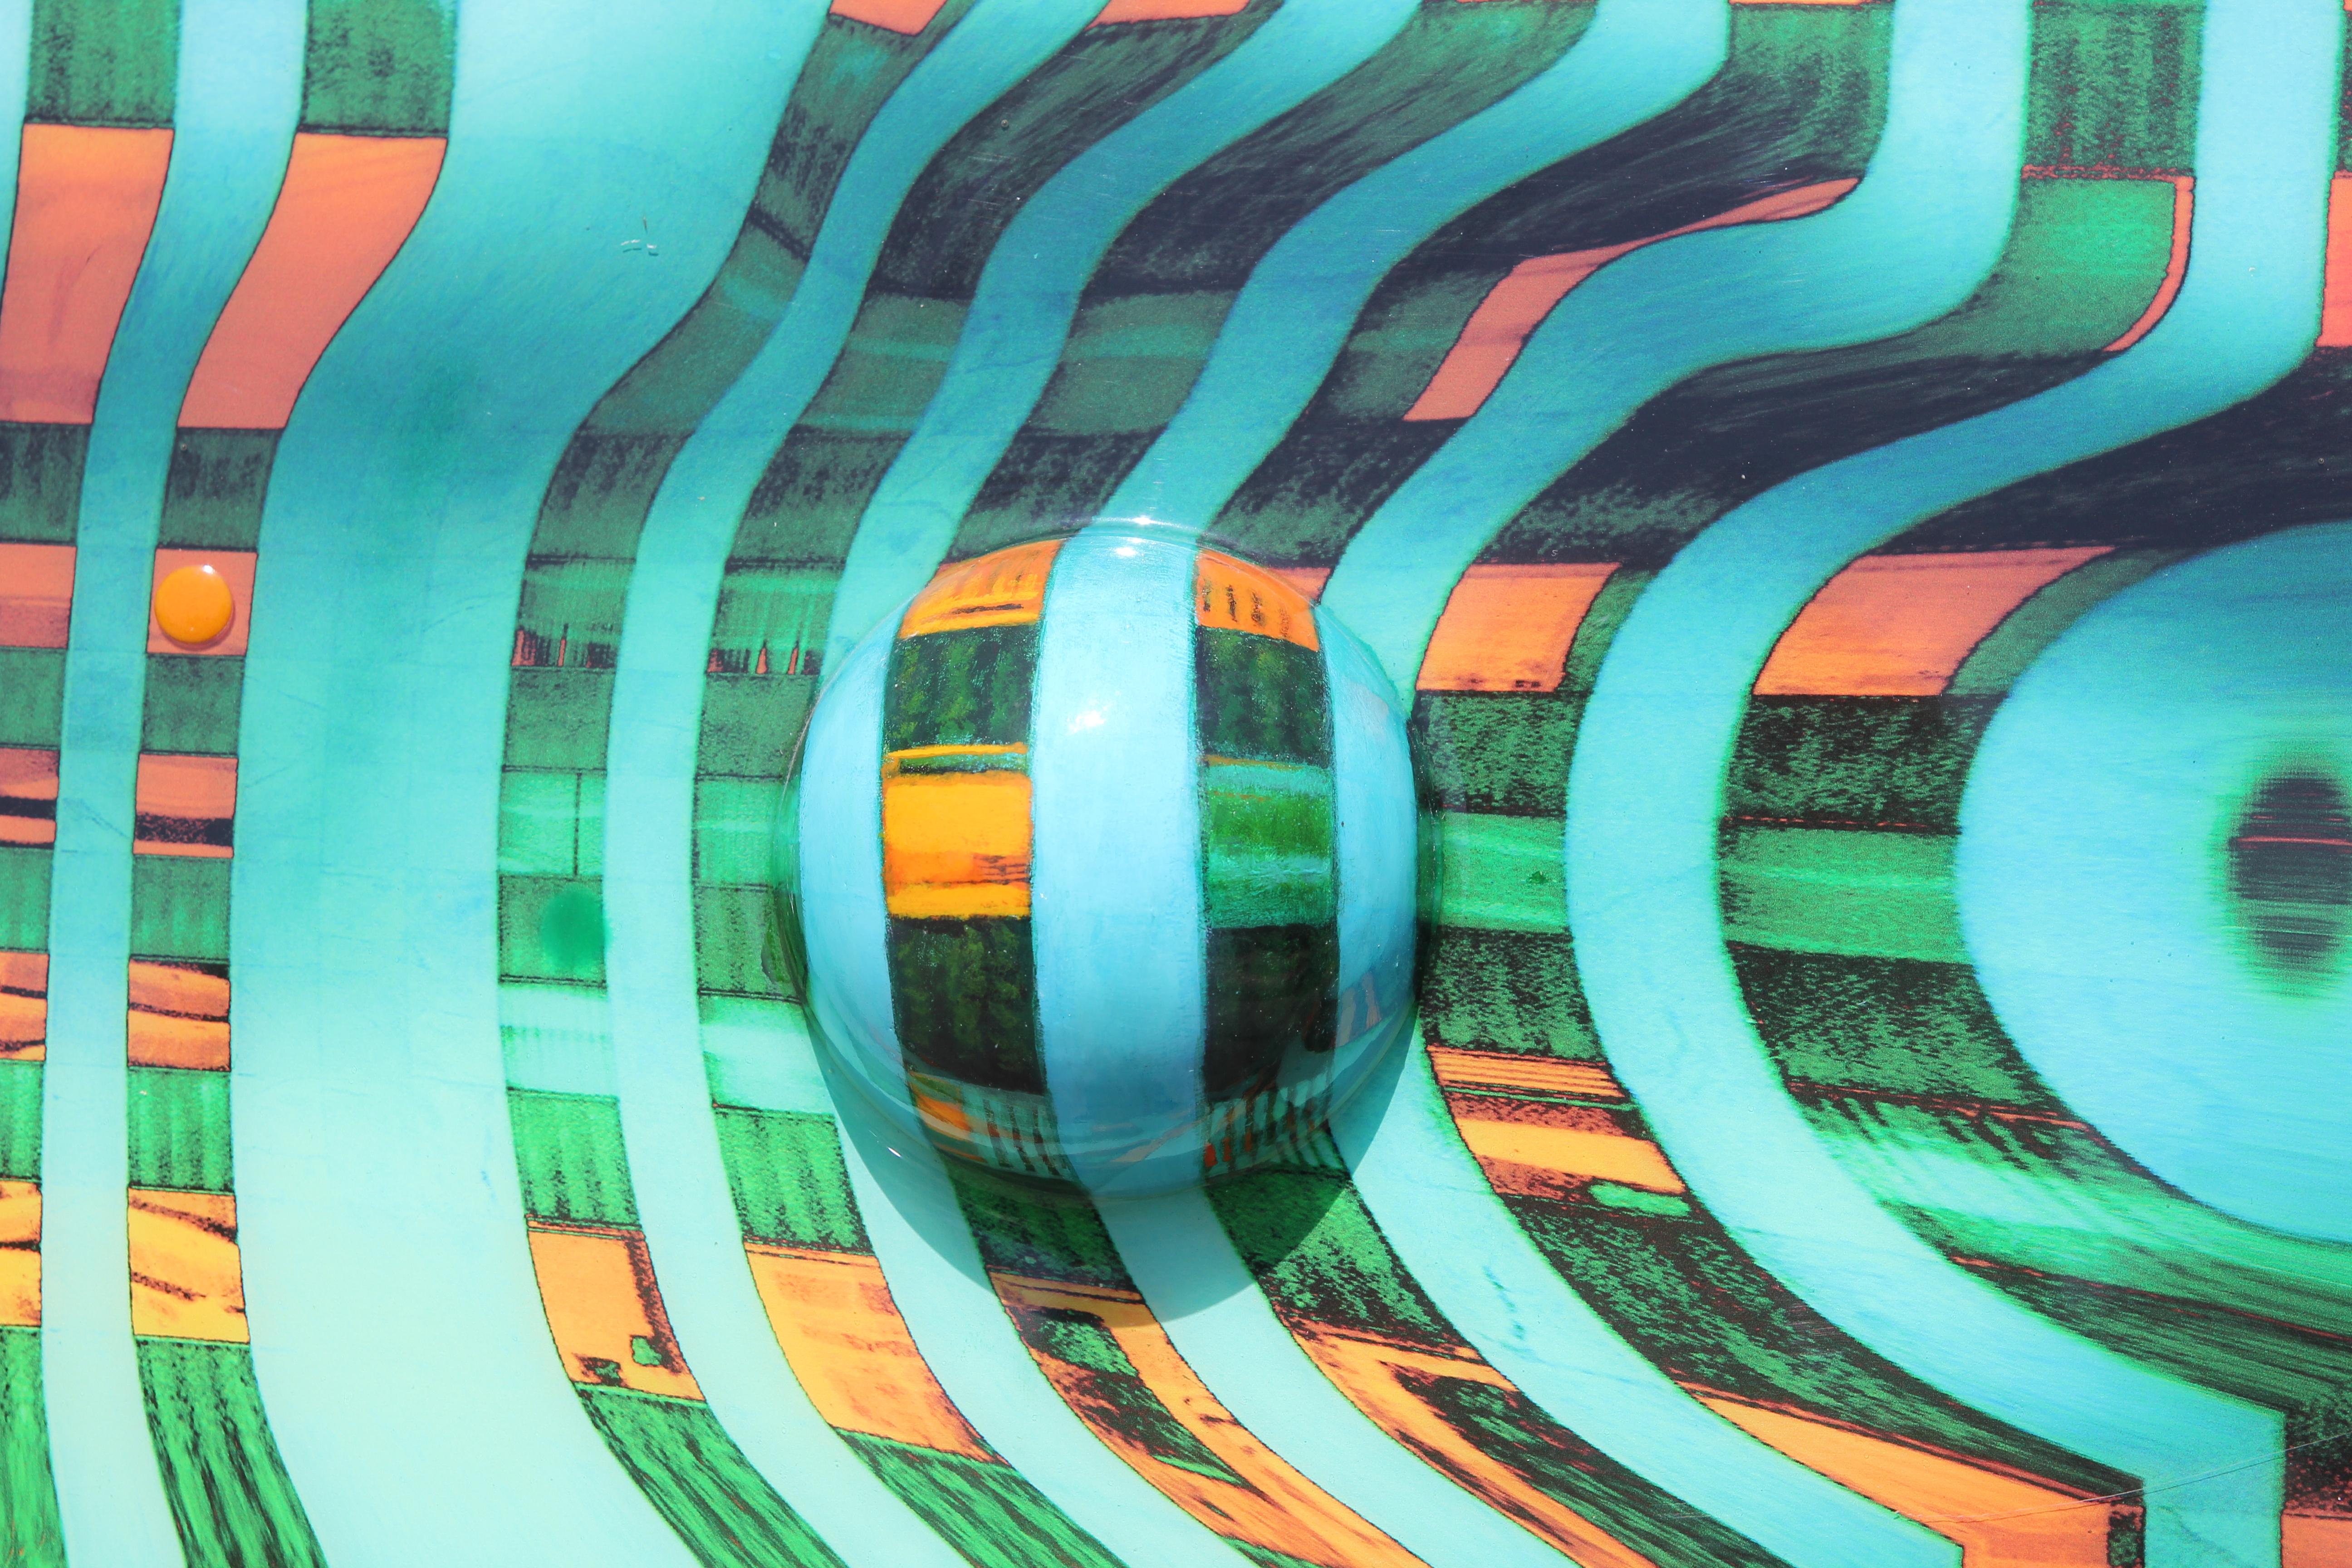 Paysage moderne d'op art abstrait bleu, vert et orange. En utilisant des éléments tridimensionnels et des techniques d'ombrage réalistes, Kidd parvient à créer un paysage ondulé et futuriste. Signé, titré et daté au dos. Actuellement non encadré,